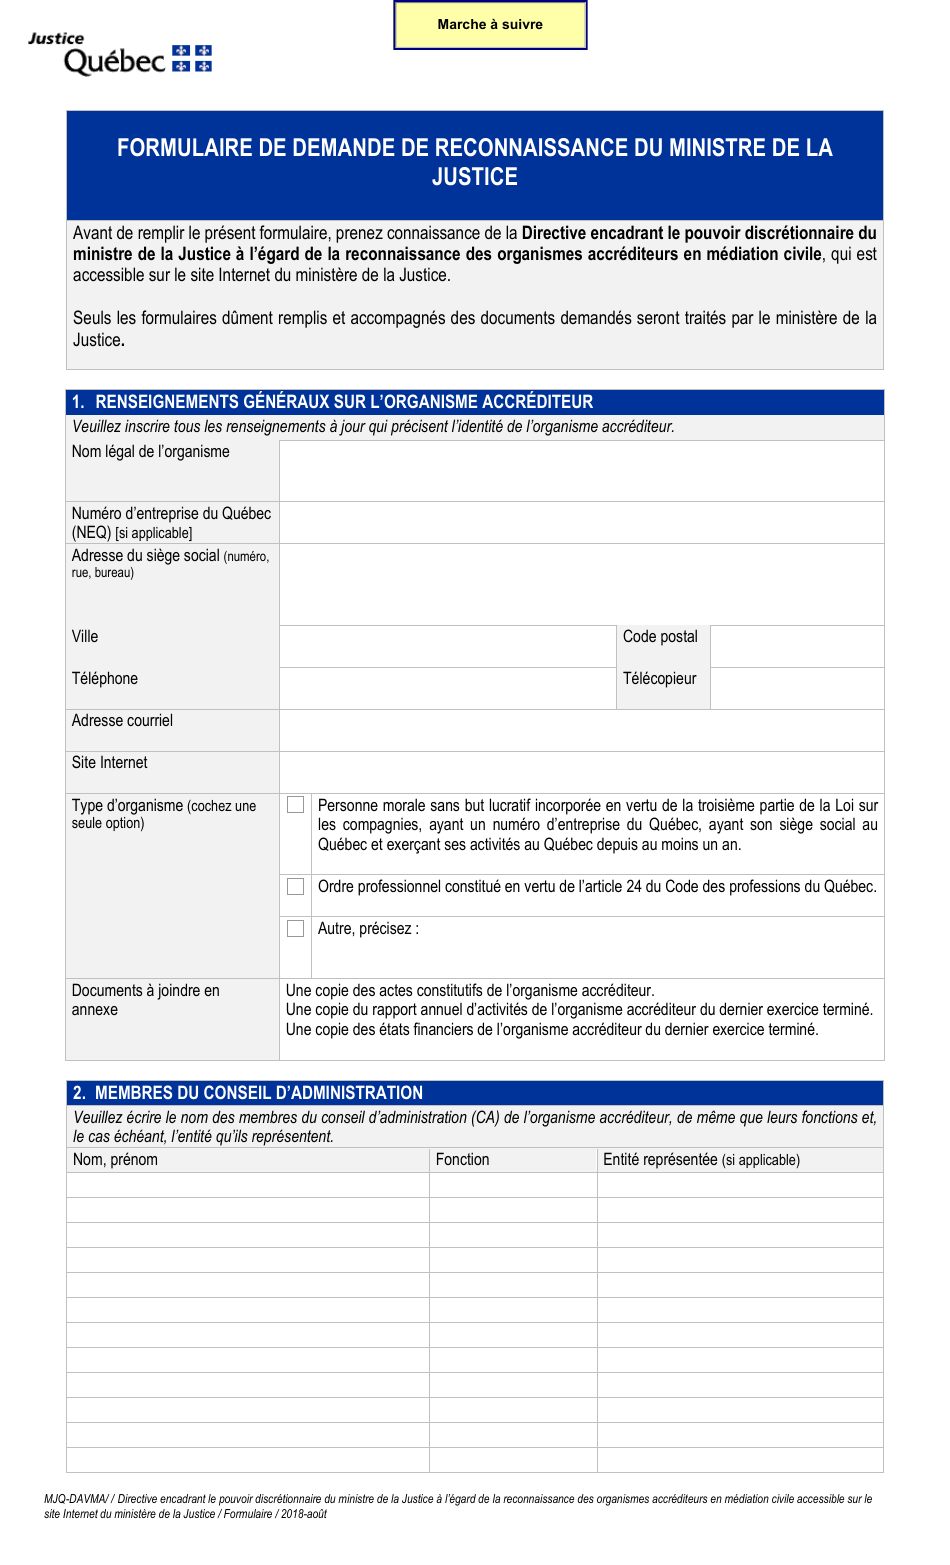 Demande Pour La Reconnaissance DES Organismes Accrediteurs En Mediation Civile - Quebec, Canada (French), Page 1